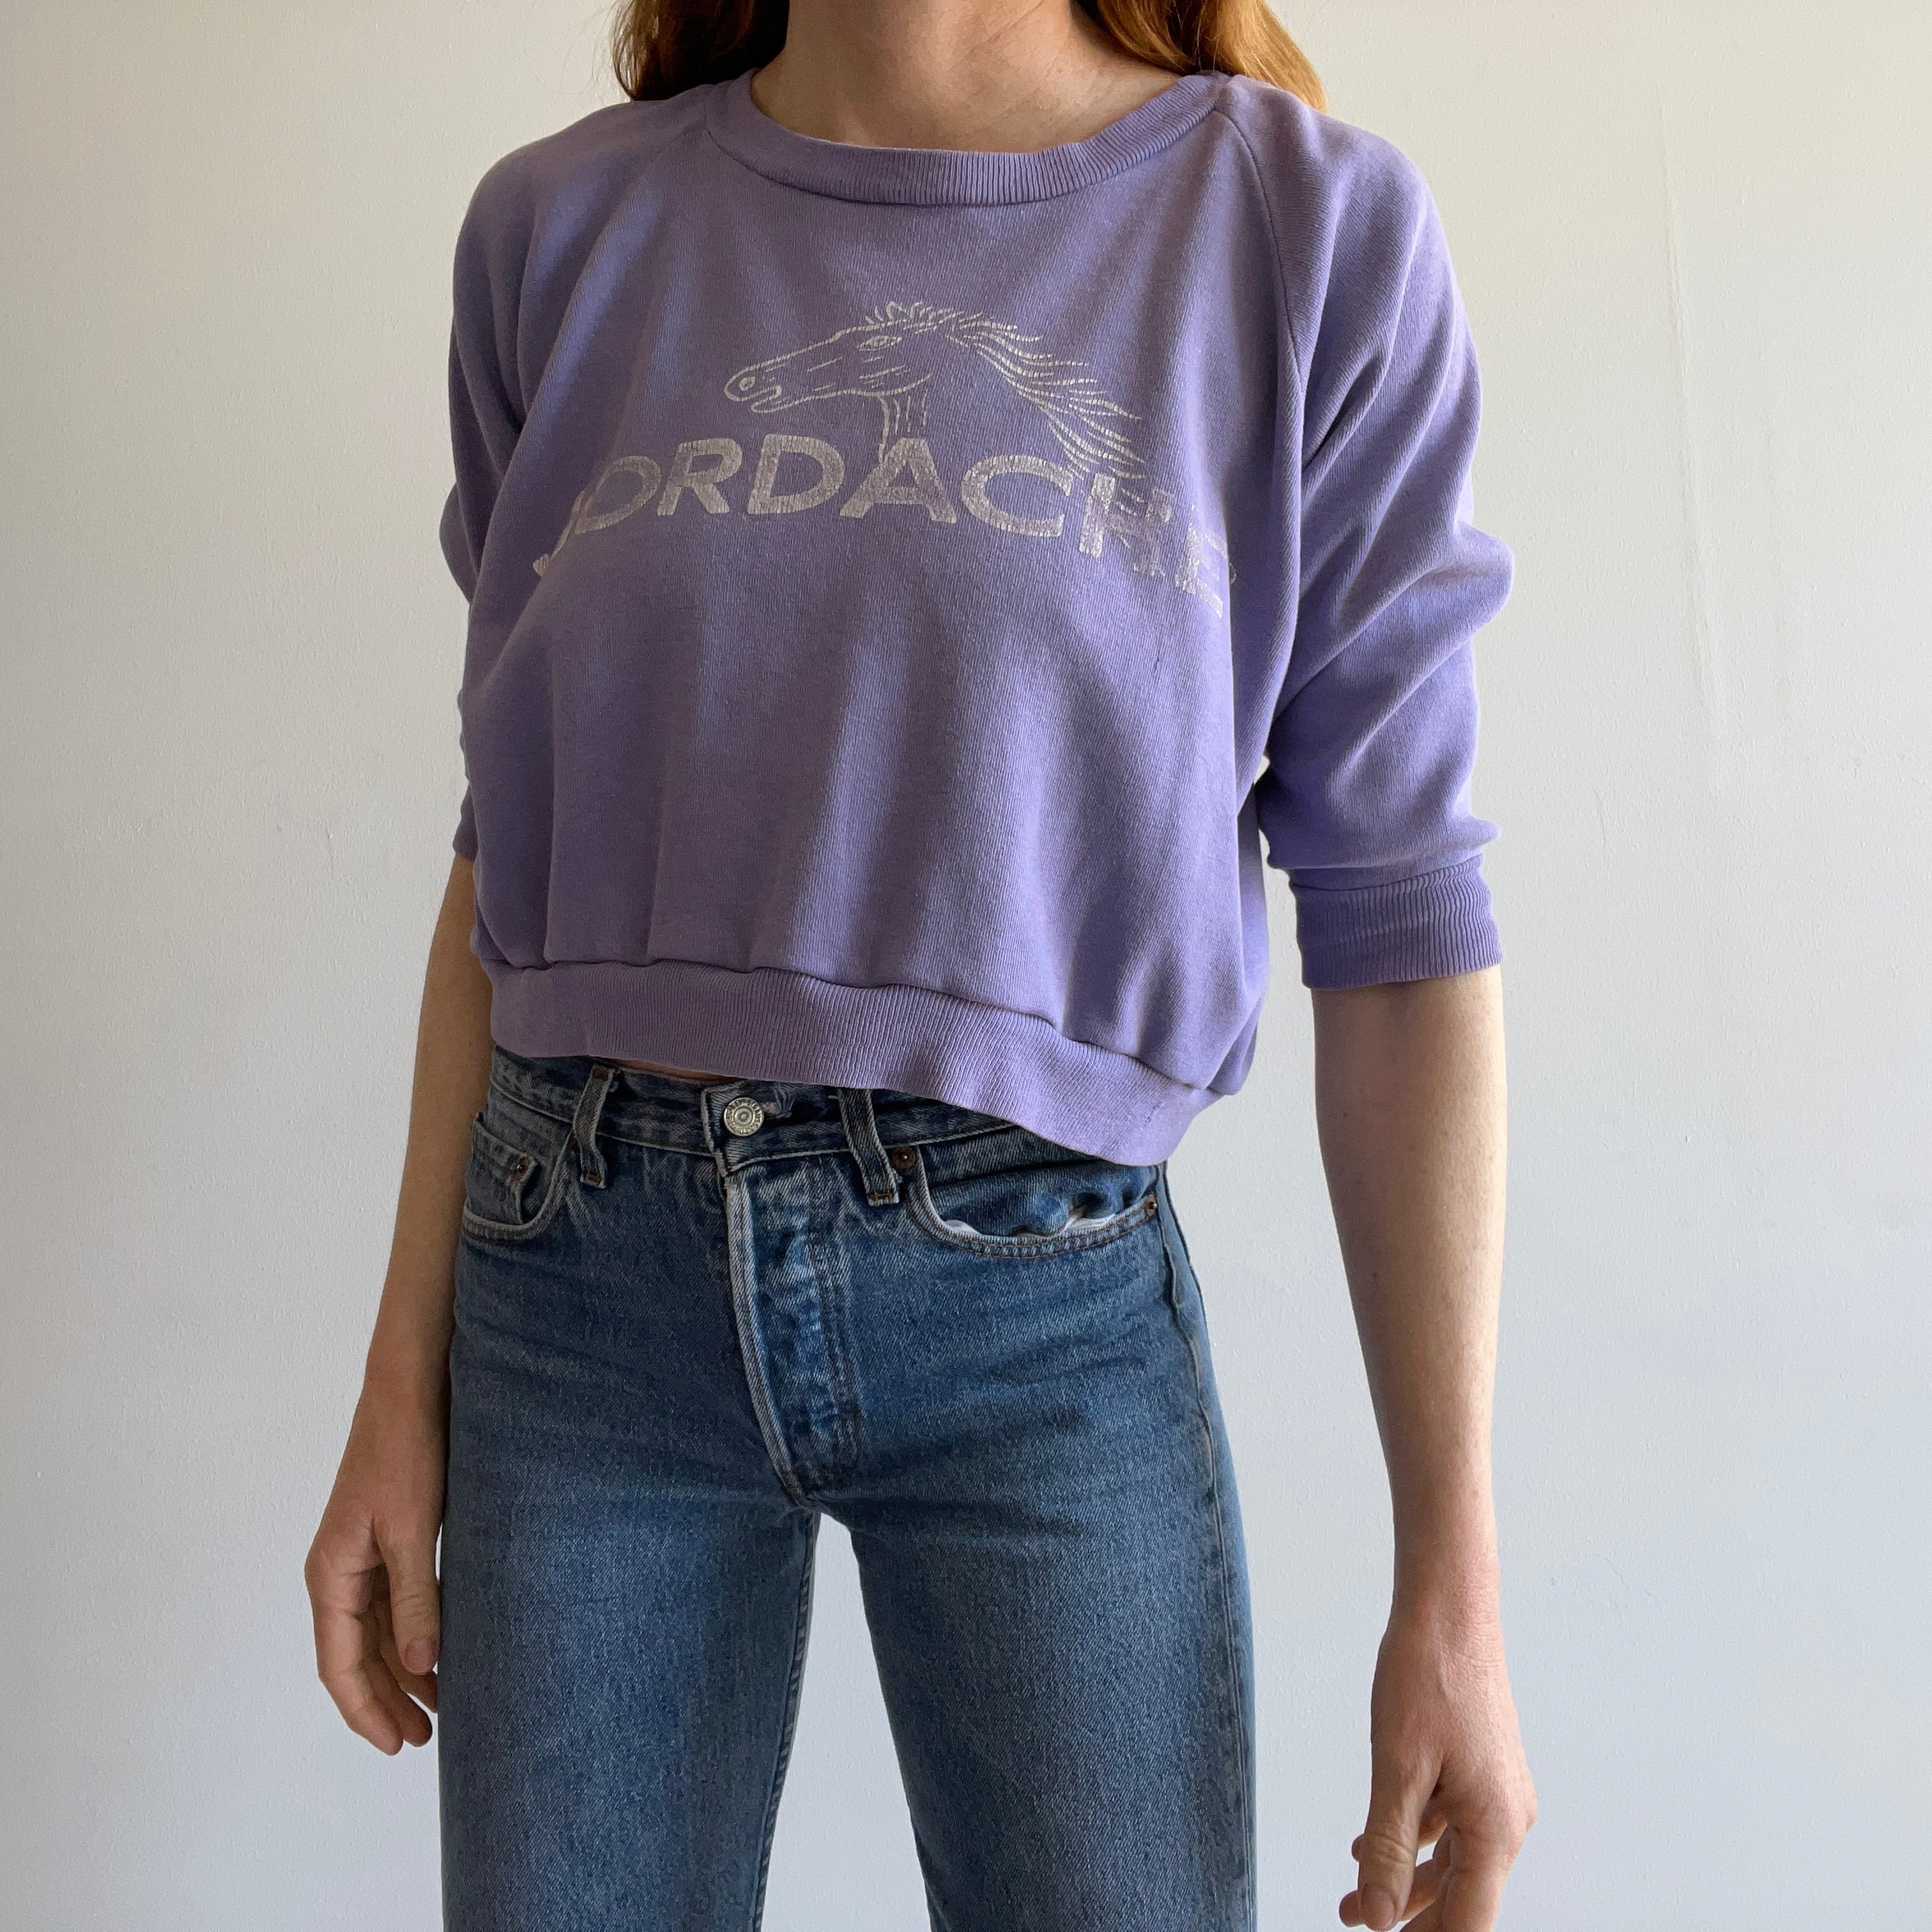 1980s Jordache Crop Top Sweatshirt - OMFG